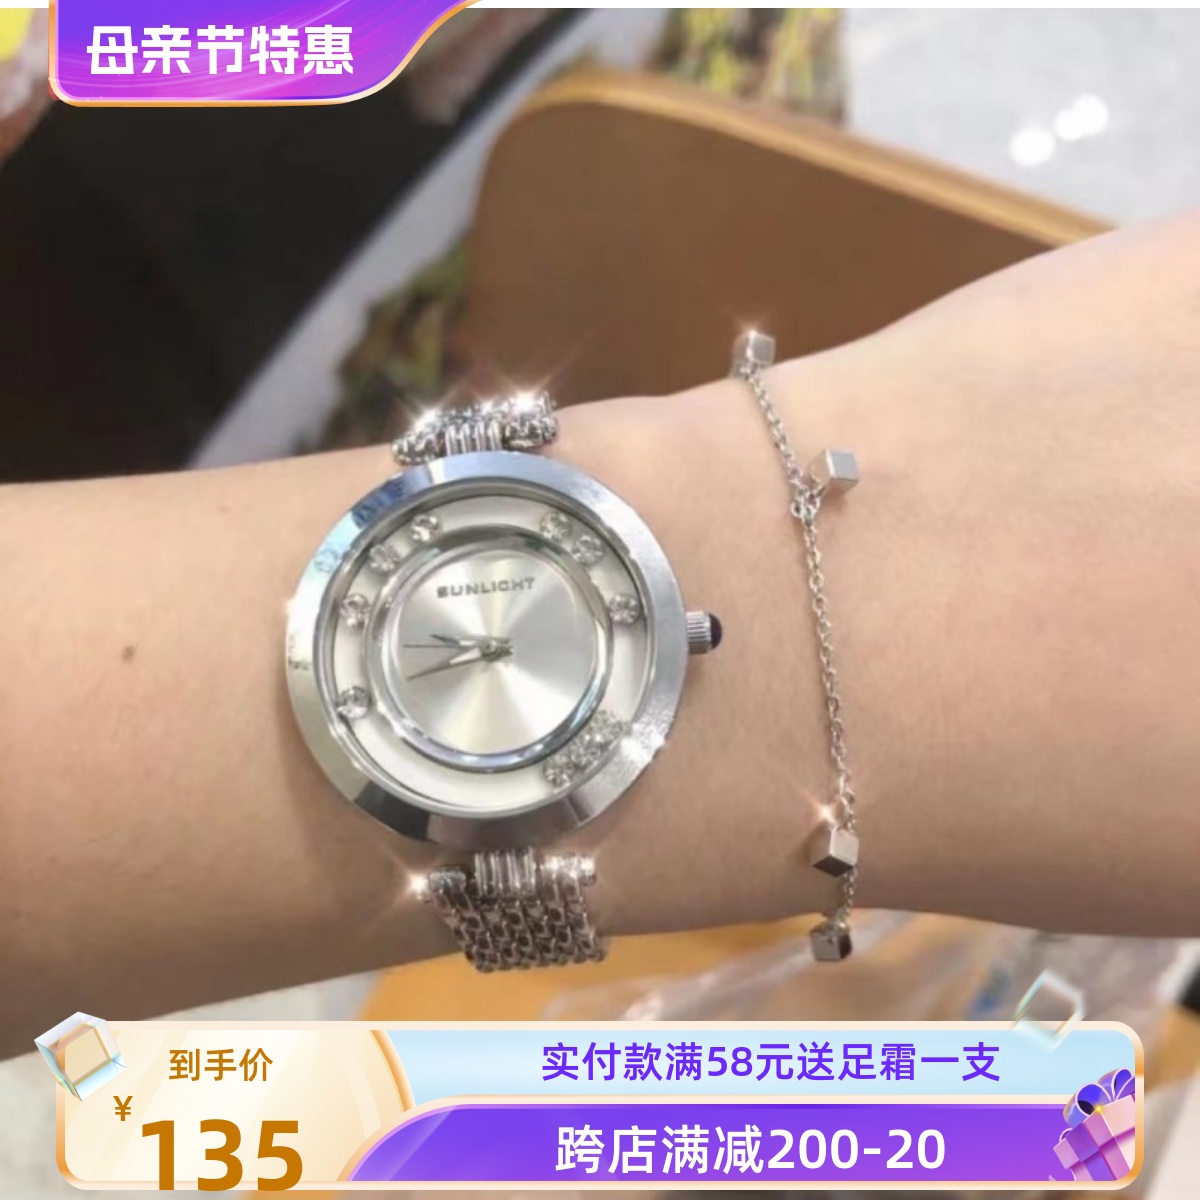 现货包邮俄罗斯sunlight阳光品牌石英时装手表时来运转金属表链